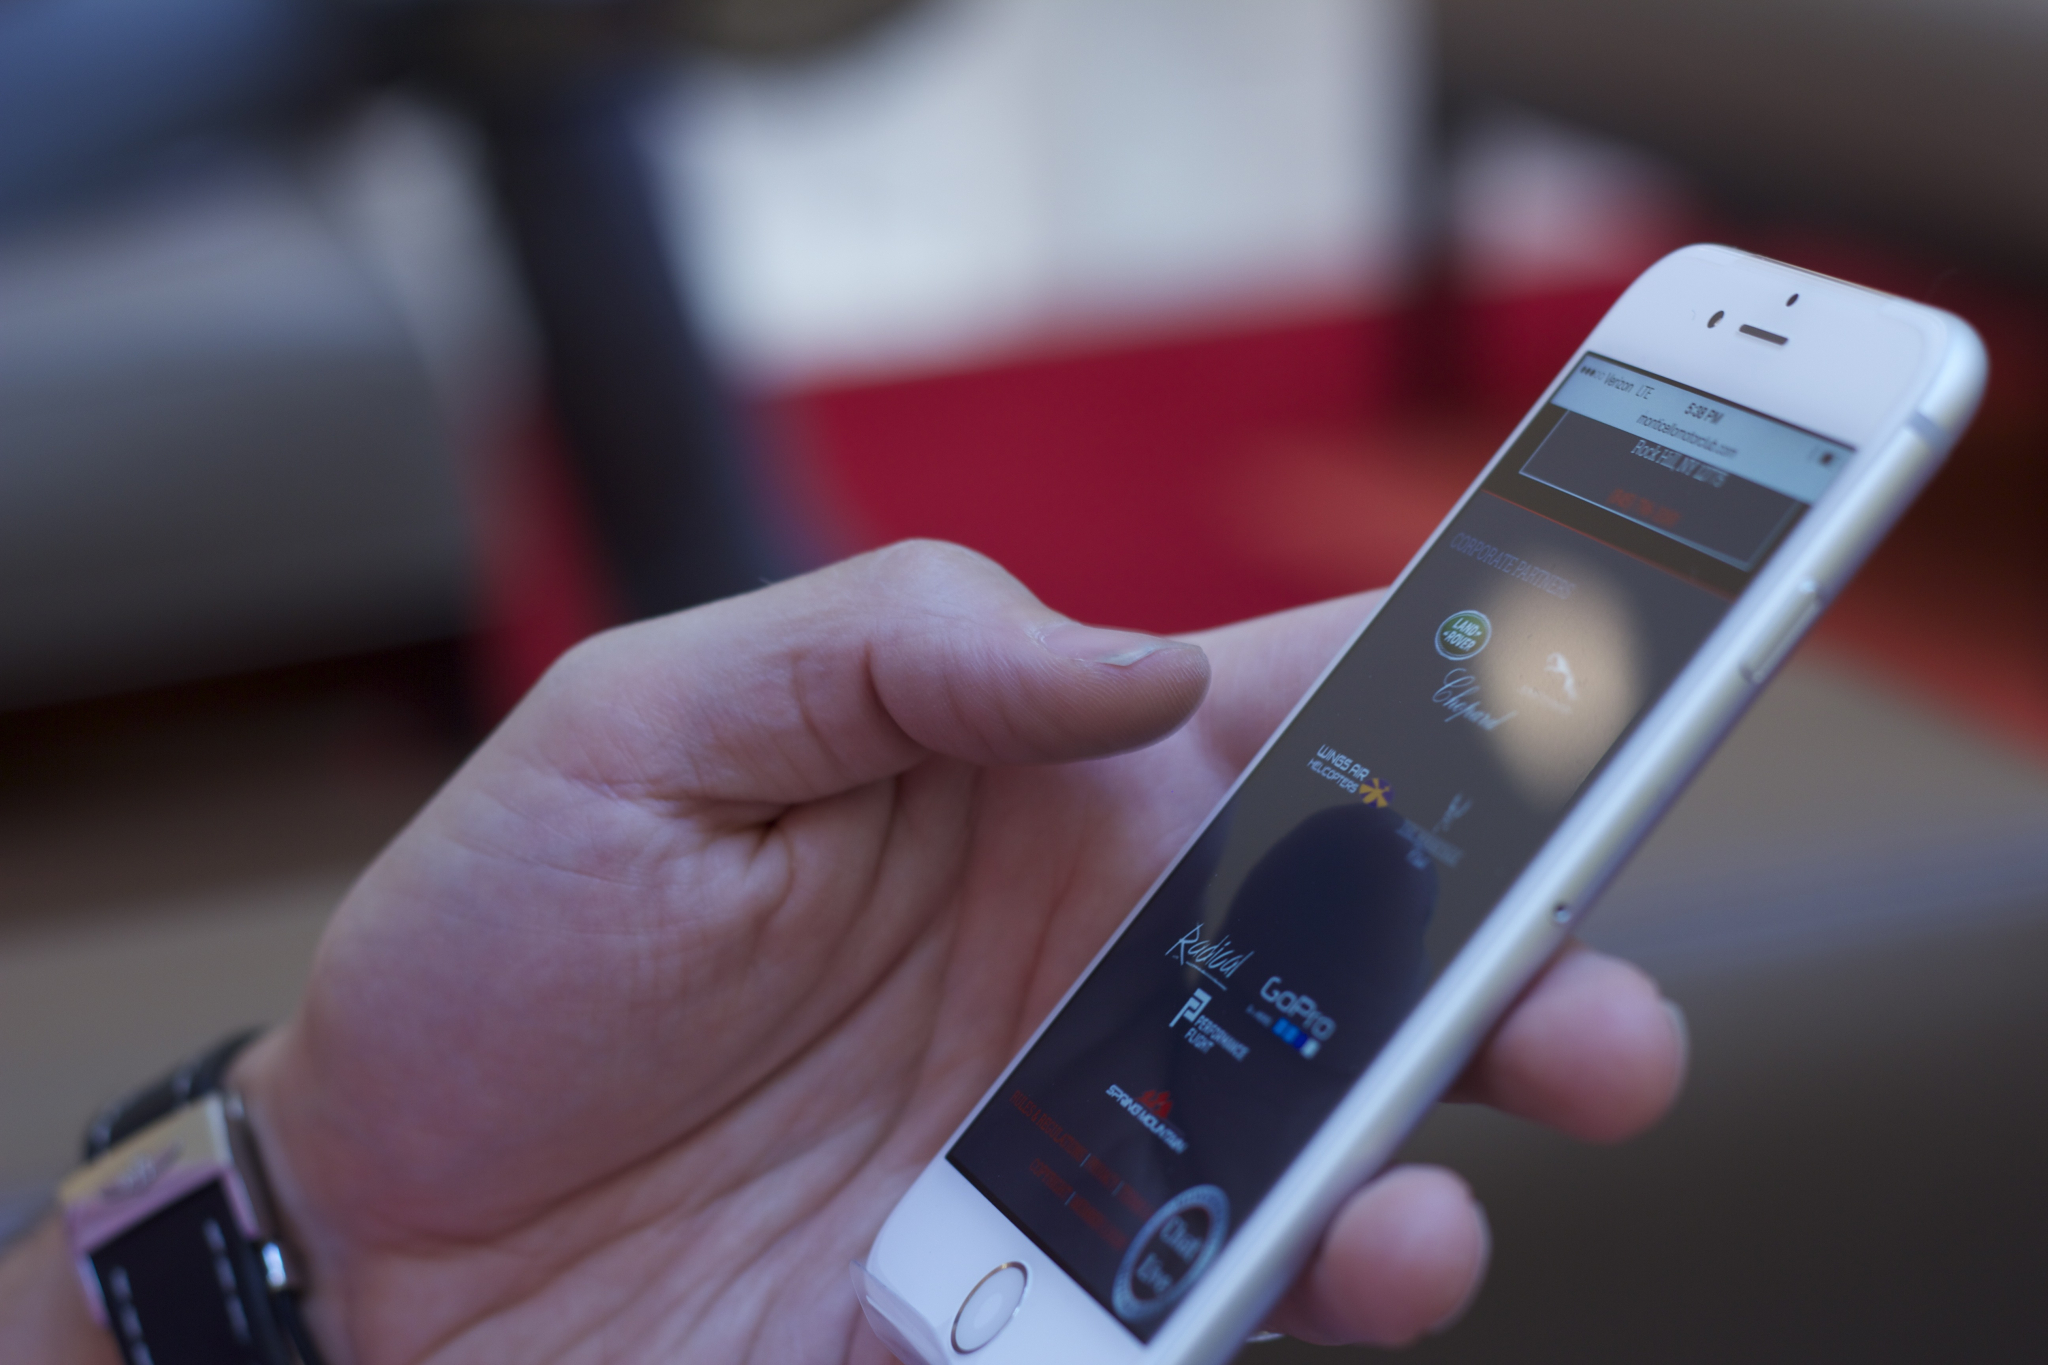 Мобильное приложение “СберБанк Онлайн” отмечено ведущей премией в области дизайна